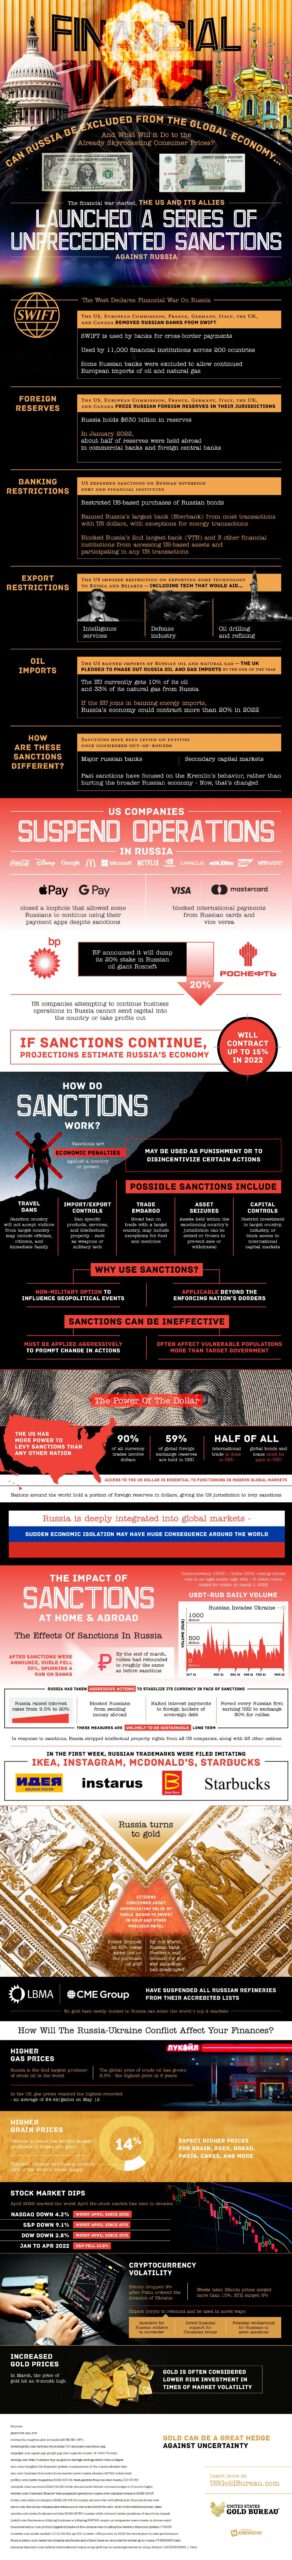 Russian Sanctions